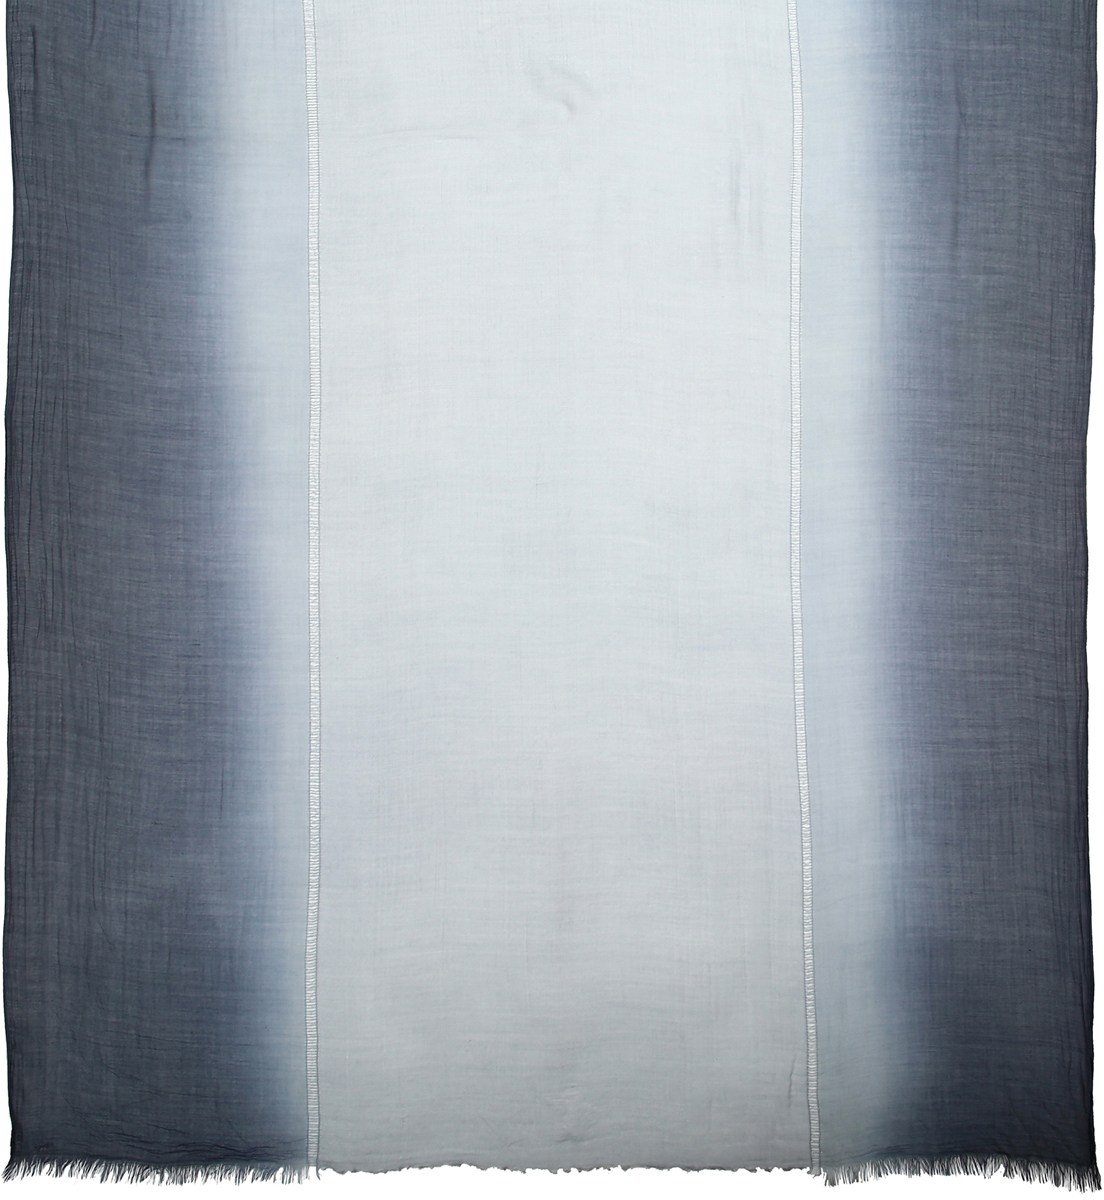 Палантин женский Модные истории, цвет: серый. 21/0591/023. Размер 190 см x 50 см